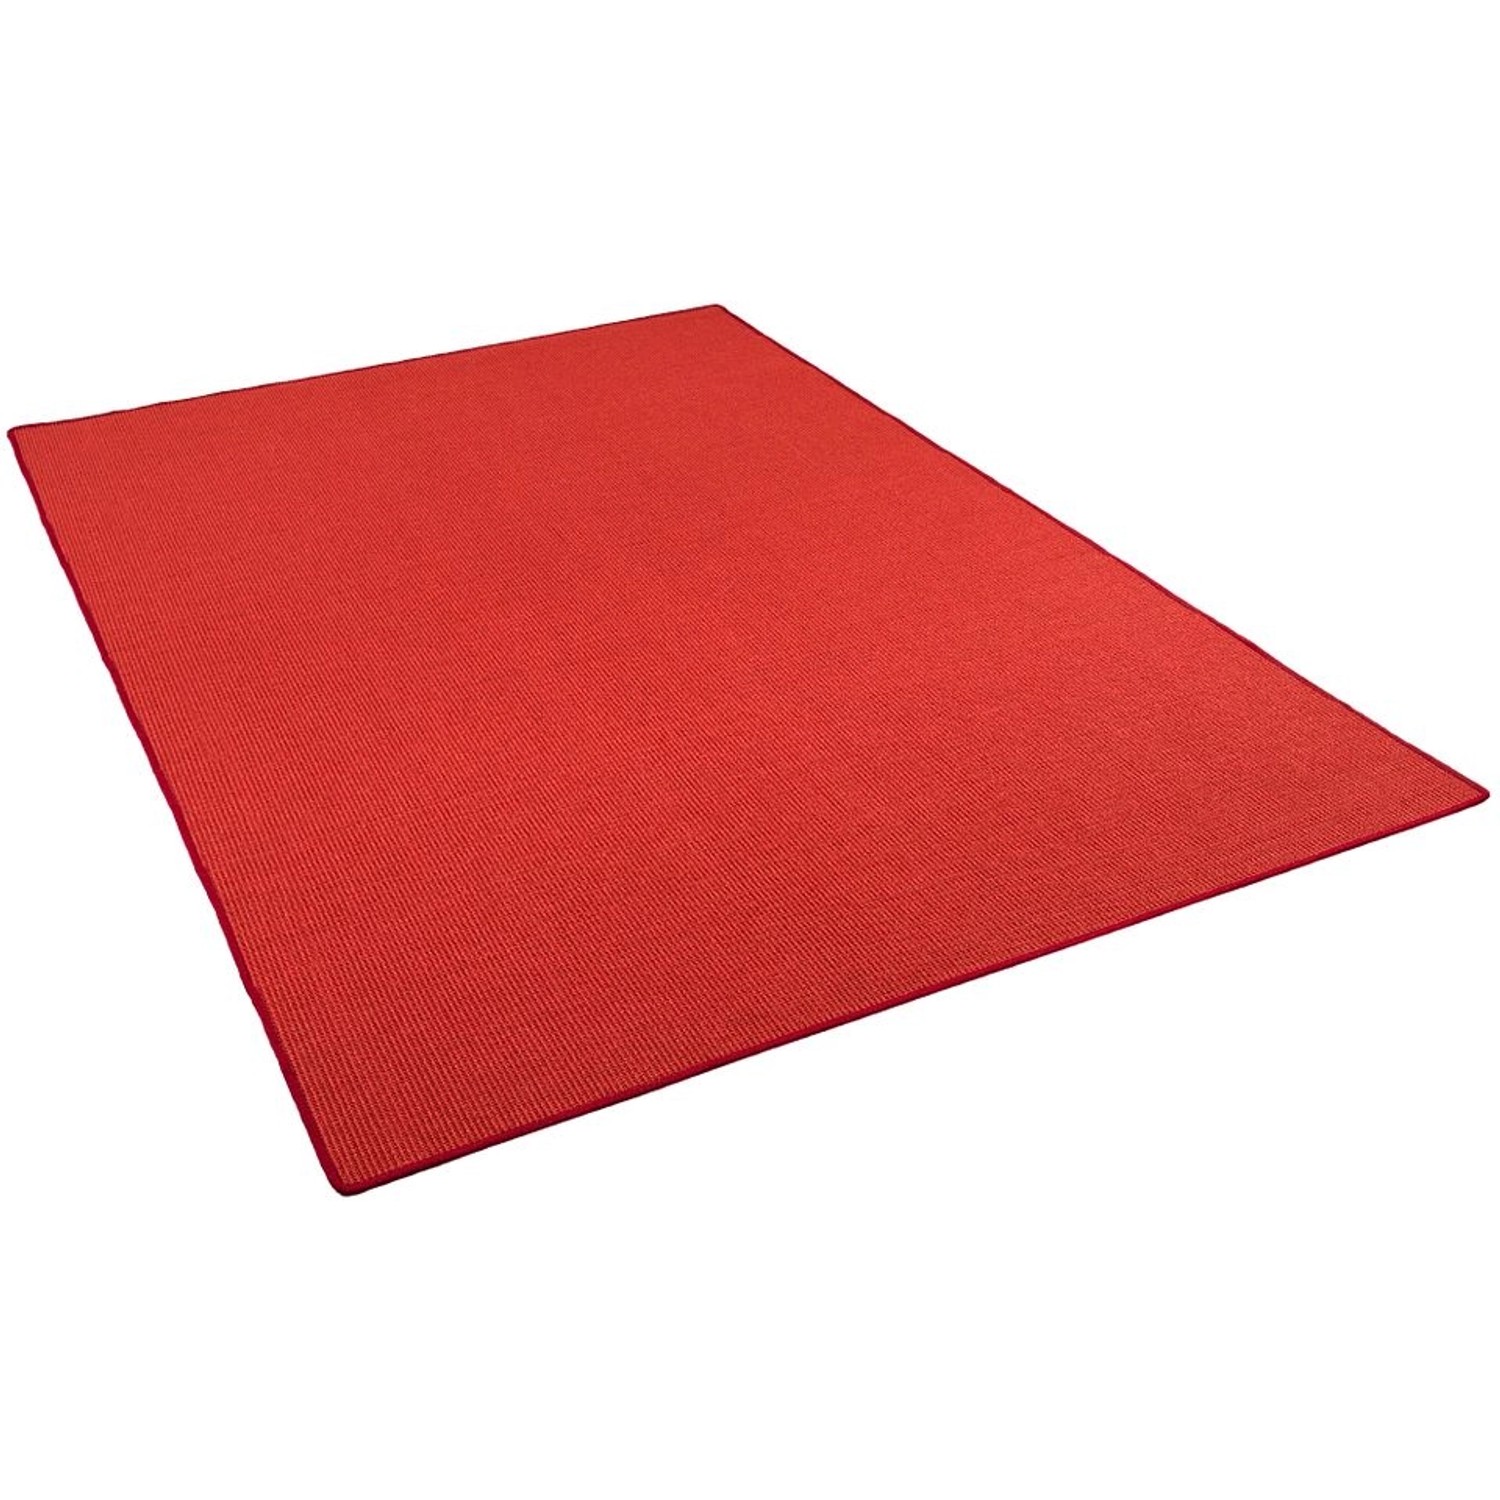 Snapstyle Sisal Natur Teppich Klassisch Rot  80x160 cm